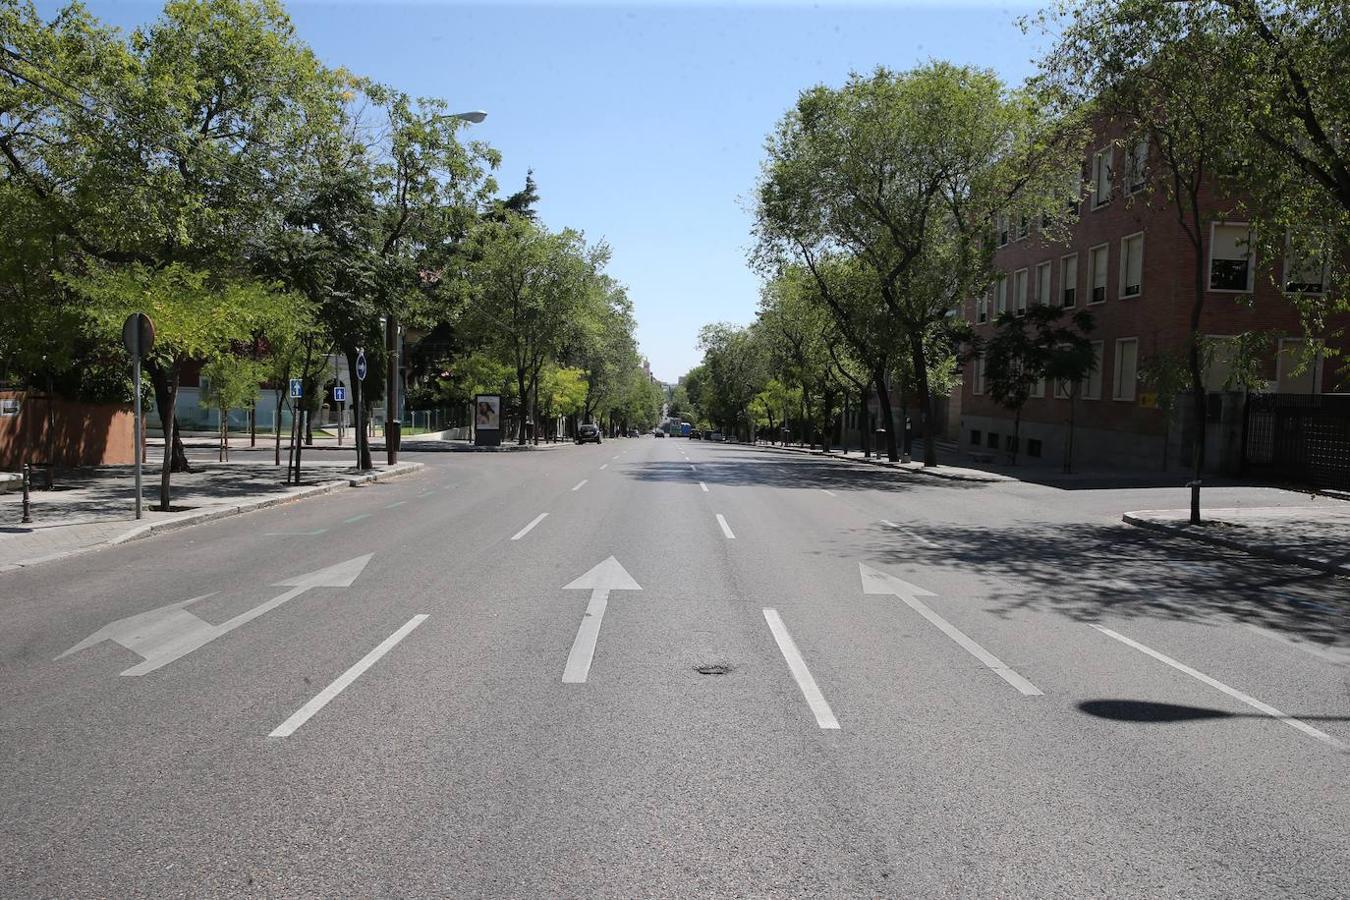 Madrid, vacío en agosto y sin coches en las avenidas